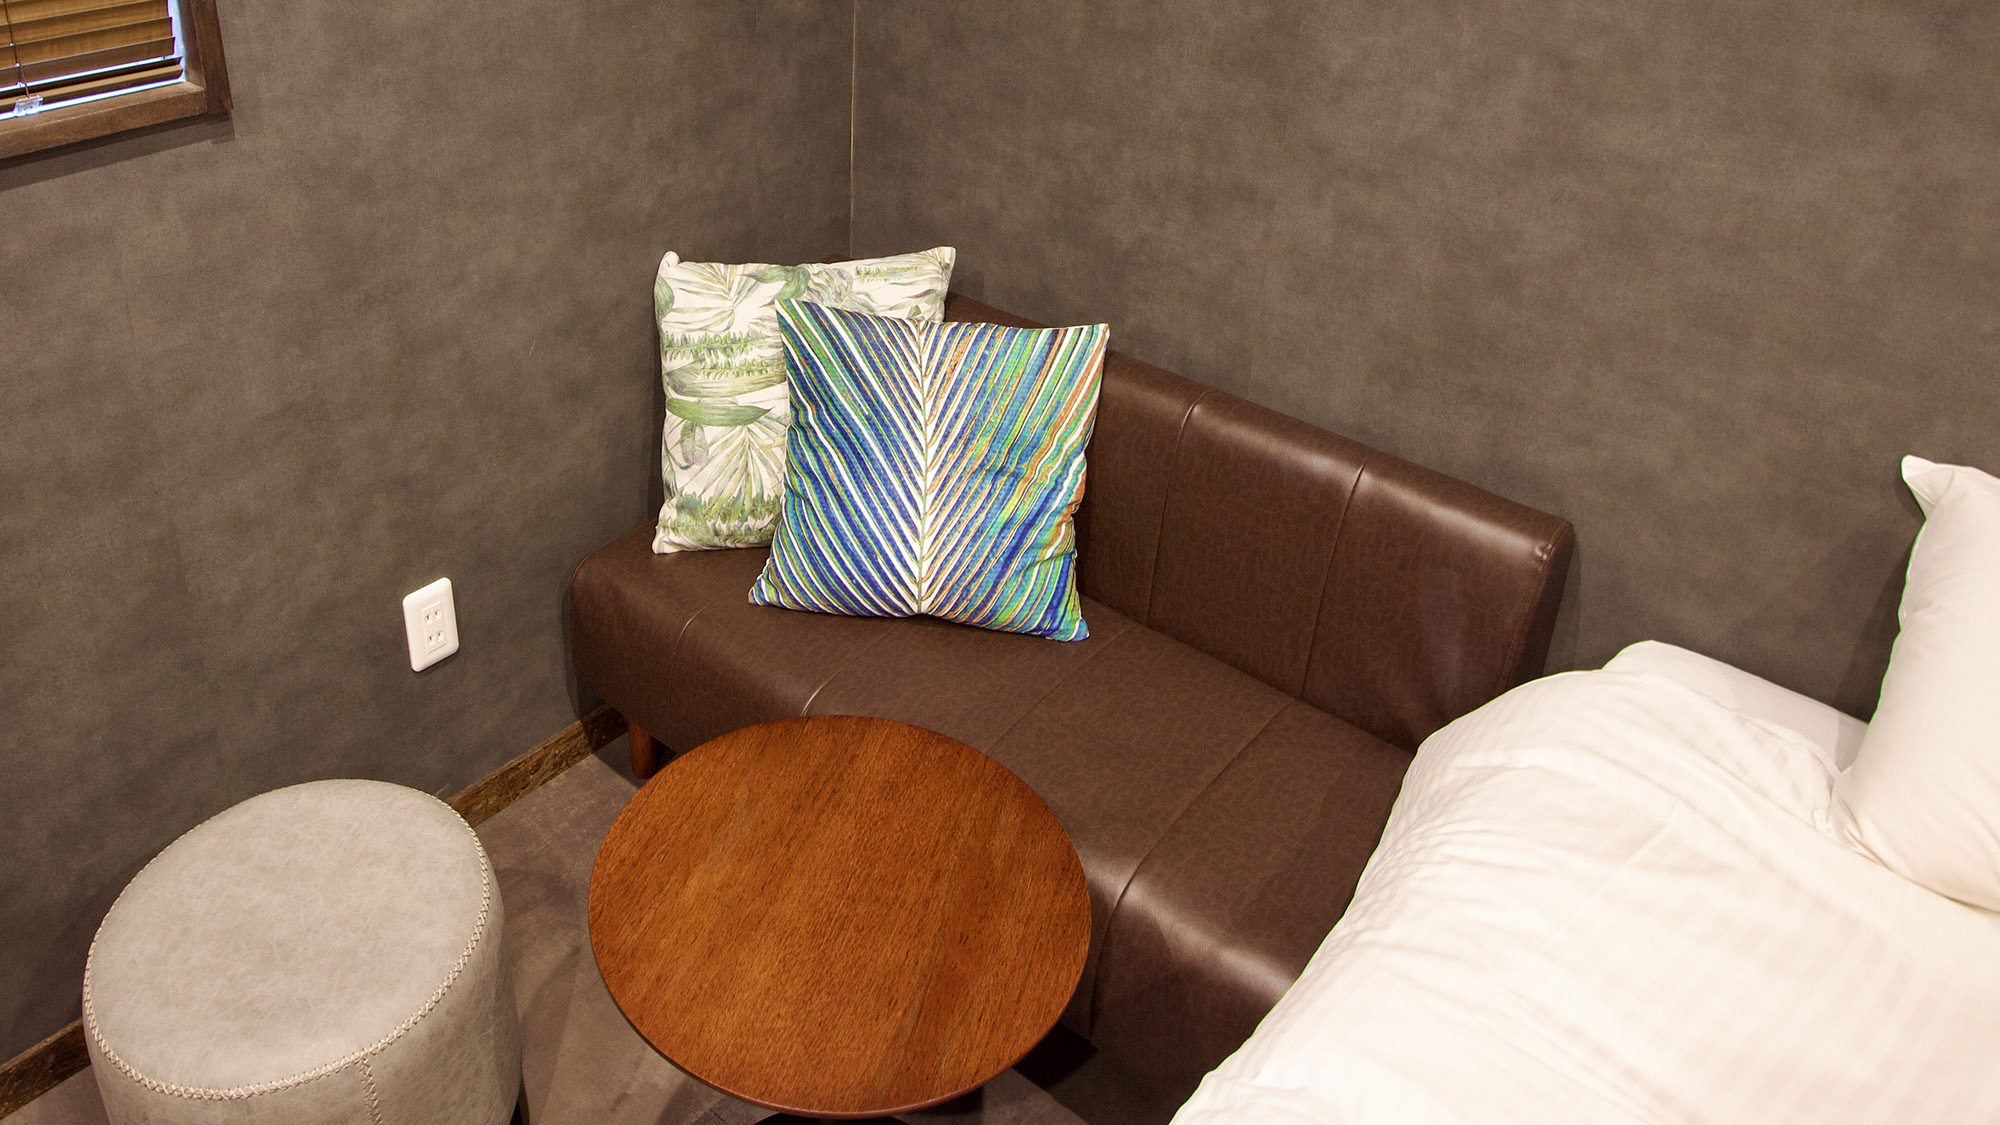 ・【部屋】シンプルなデザインで居心地の良い空間。ソファのうえでゆったりとした時間をおくつろぎください